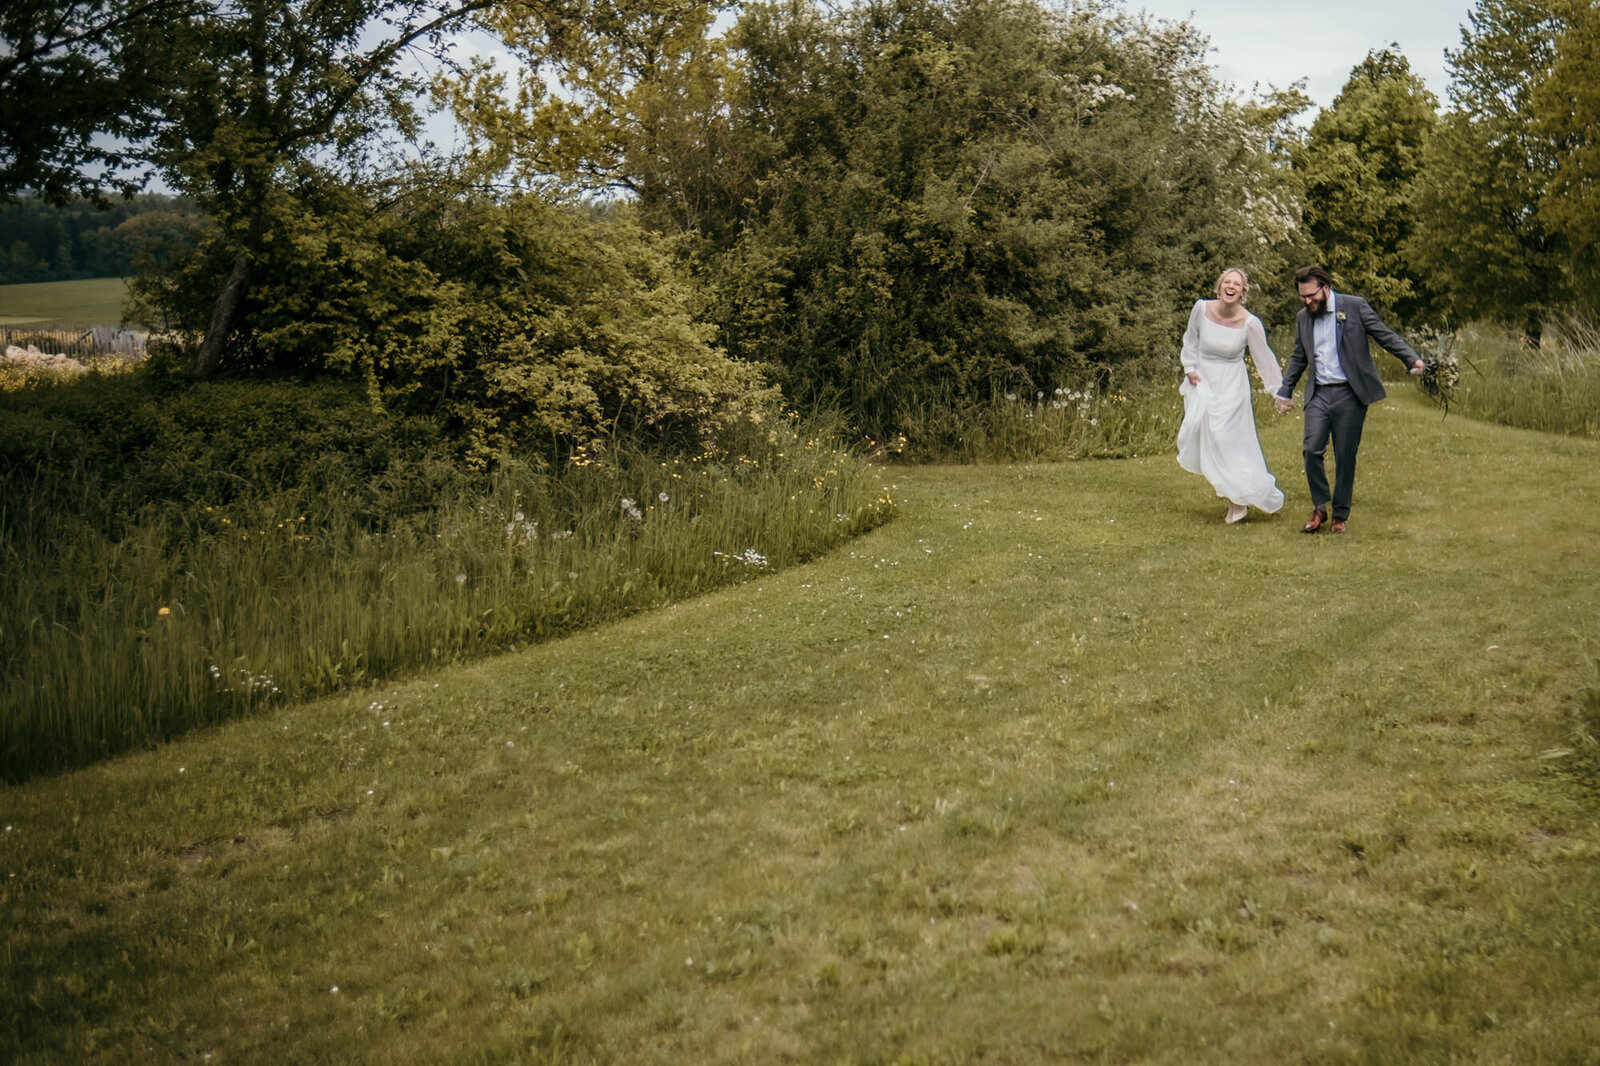 Das Foto vom Paarshooting zeigt das Hochzeitspaar über eine Wiese laufend und tanzend.